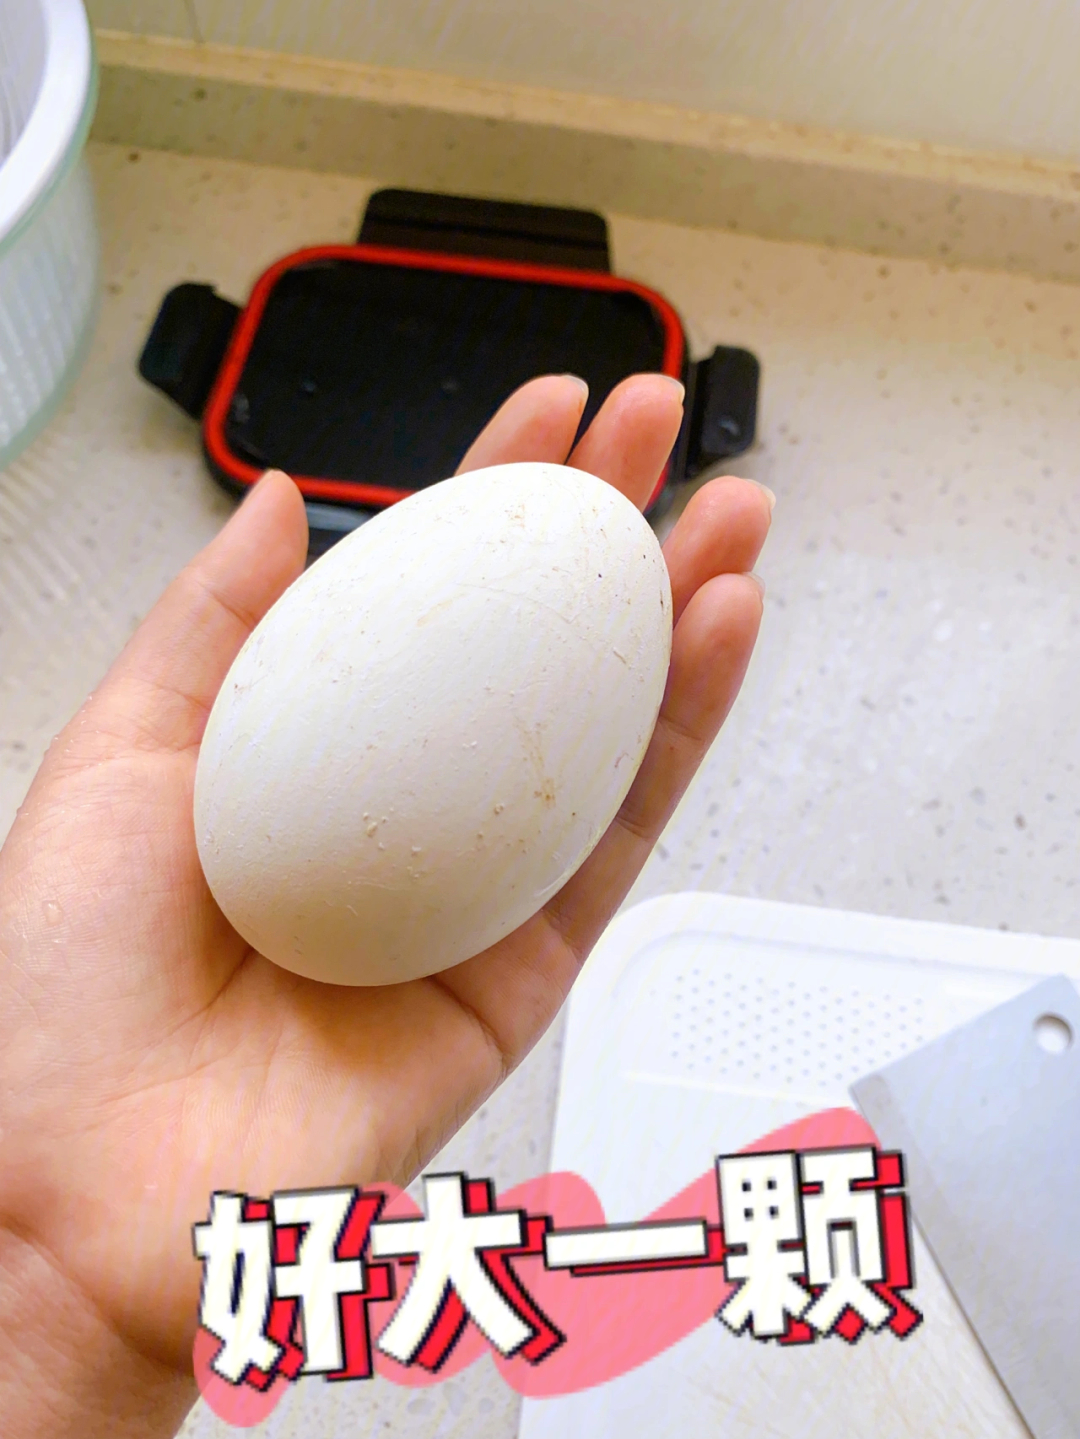 01今天逛超市,在货架上看到鸭蛋,真的好大一颗,差不多是平常鸡蛋的